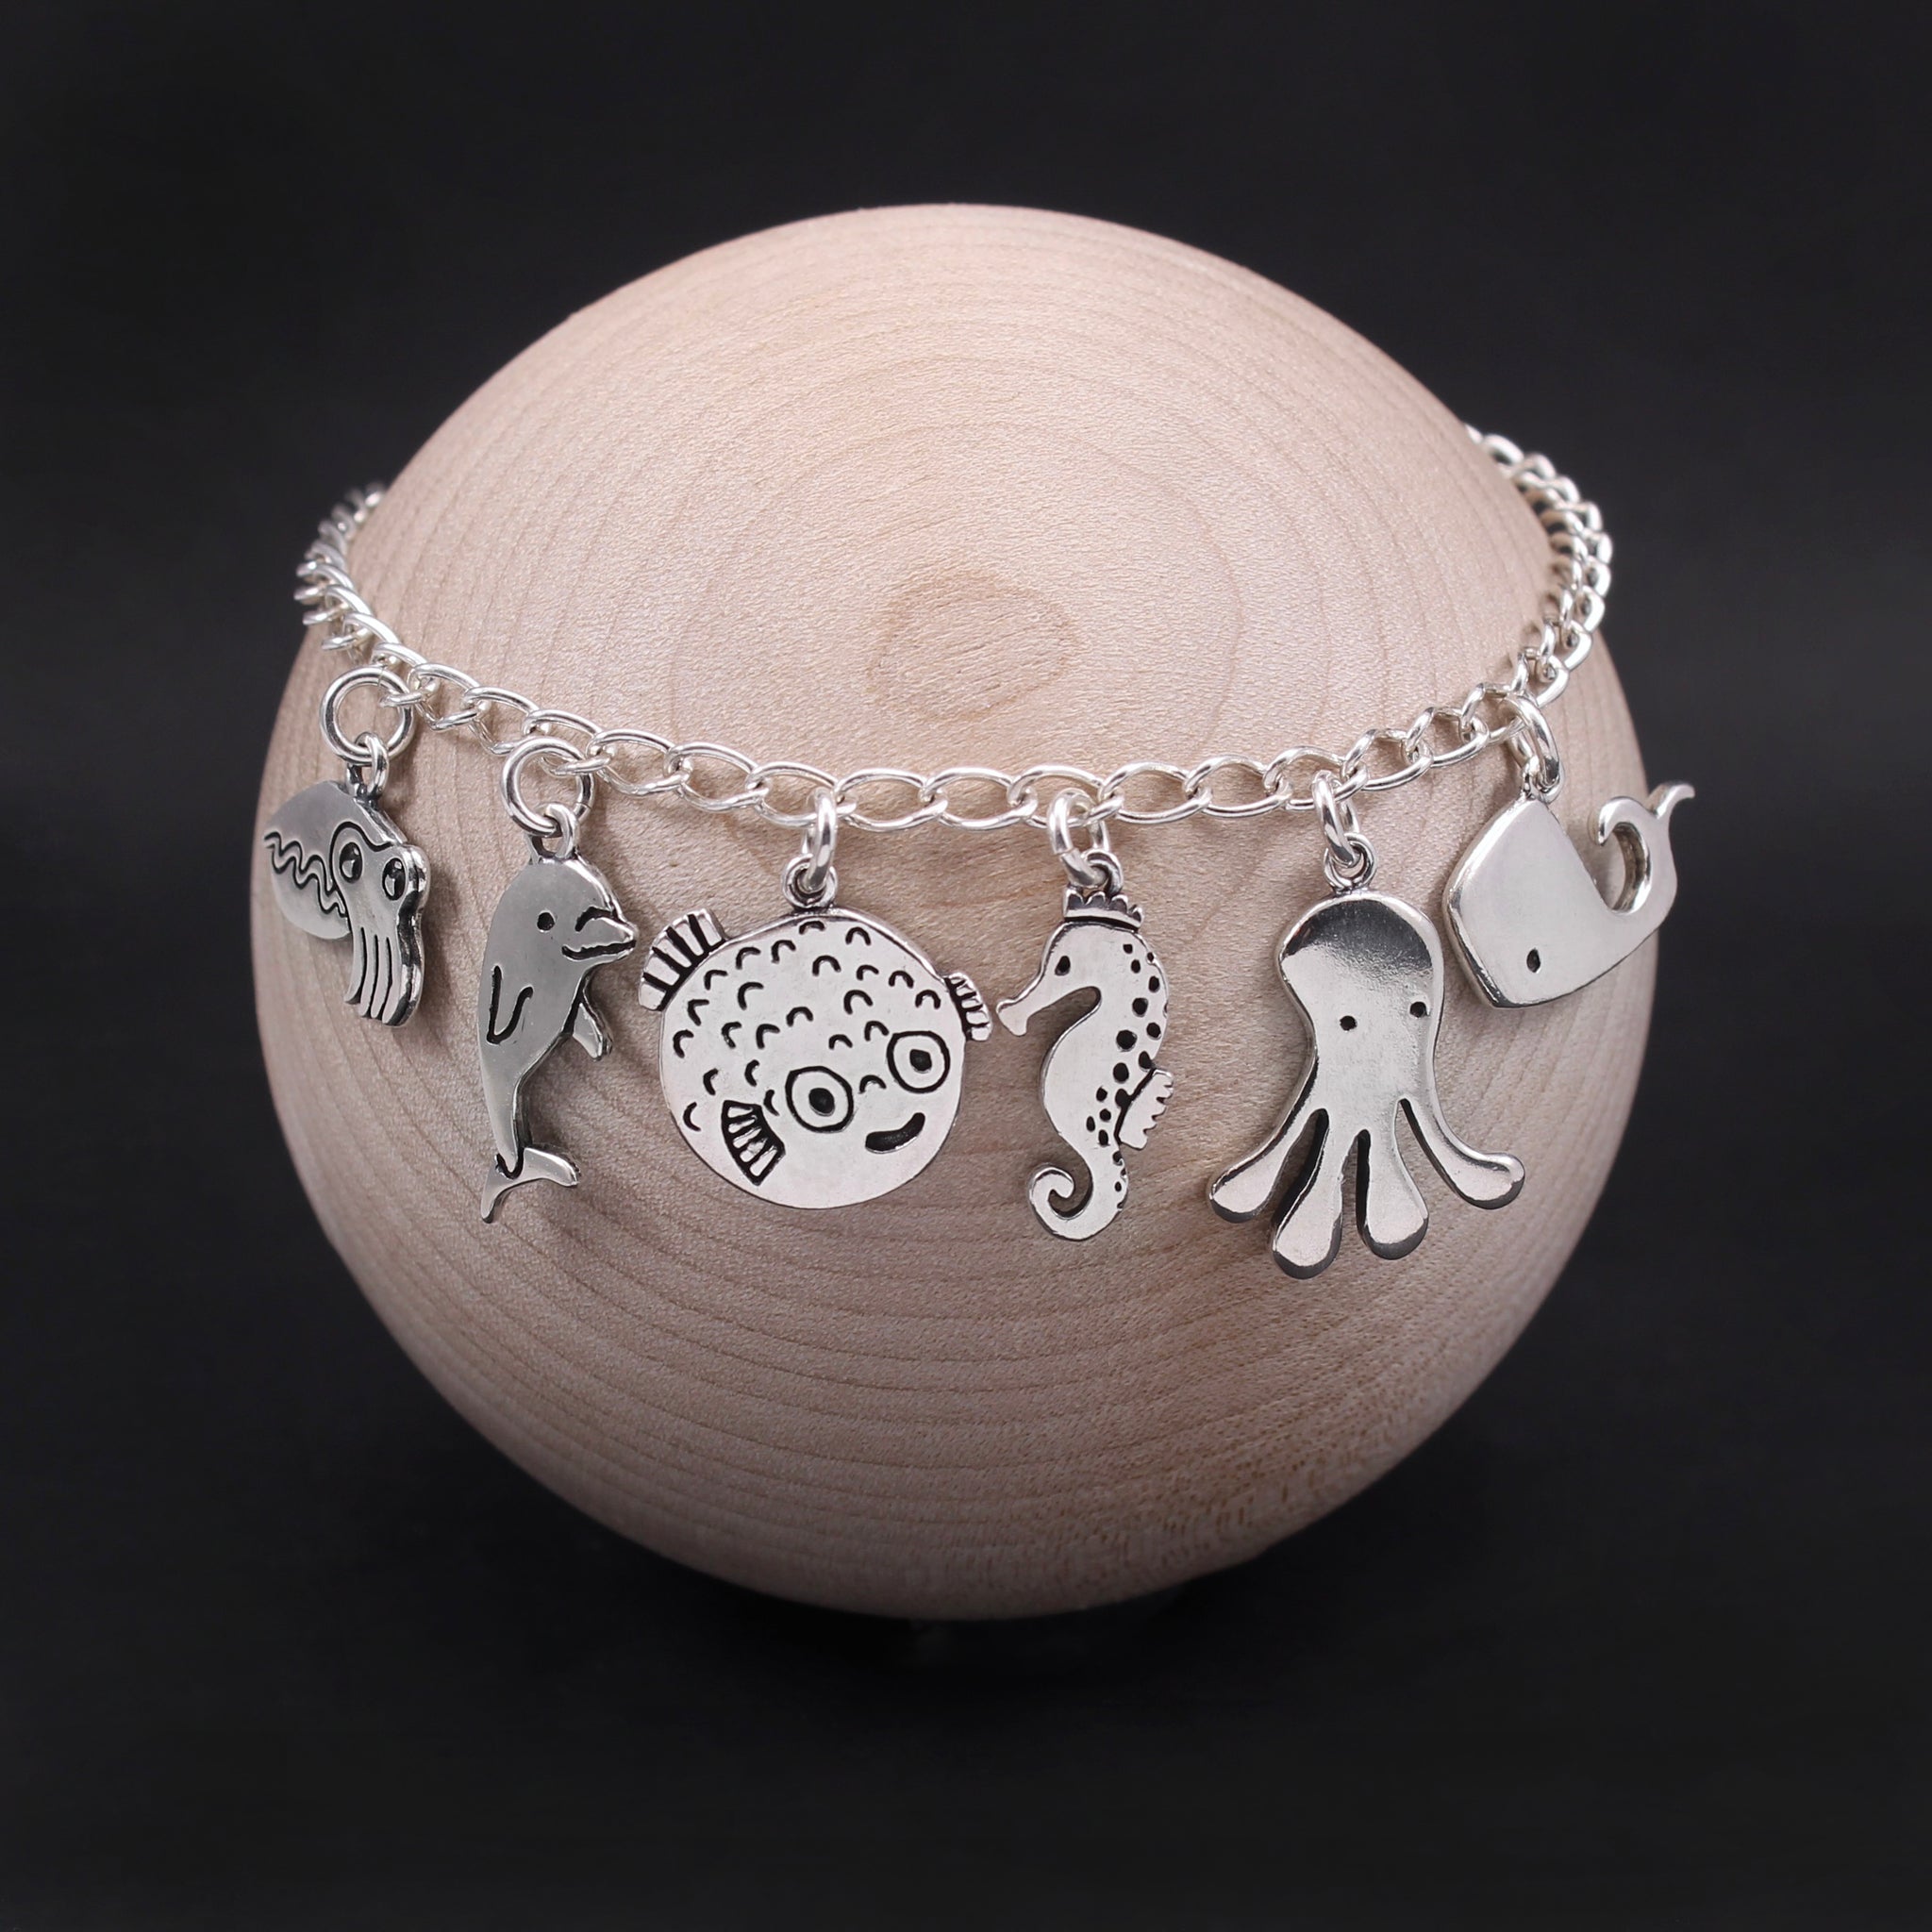 Six Cats Charm Bracelet - Sterling Silver Bracelet with 6 Unique